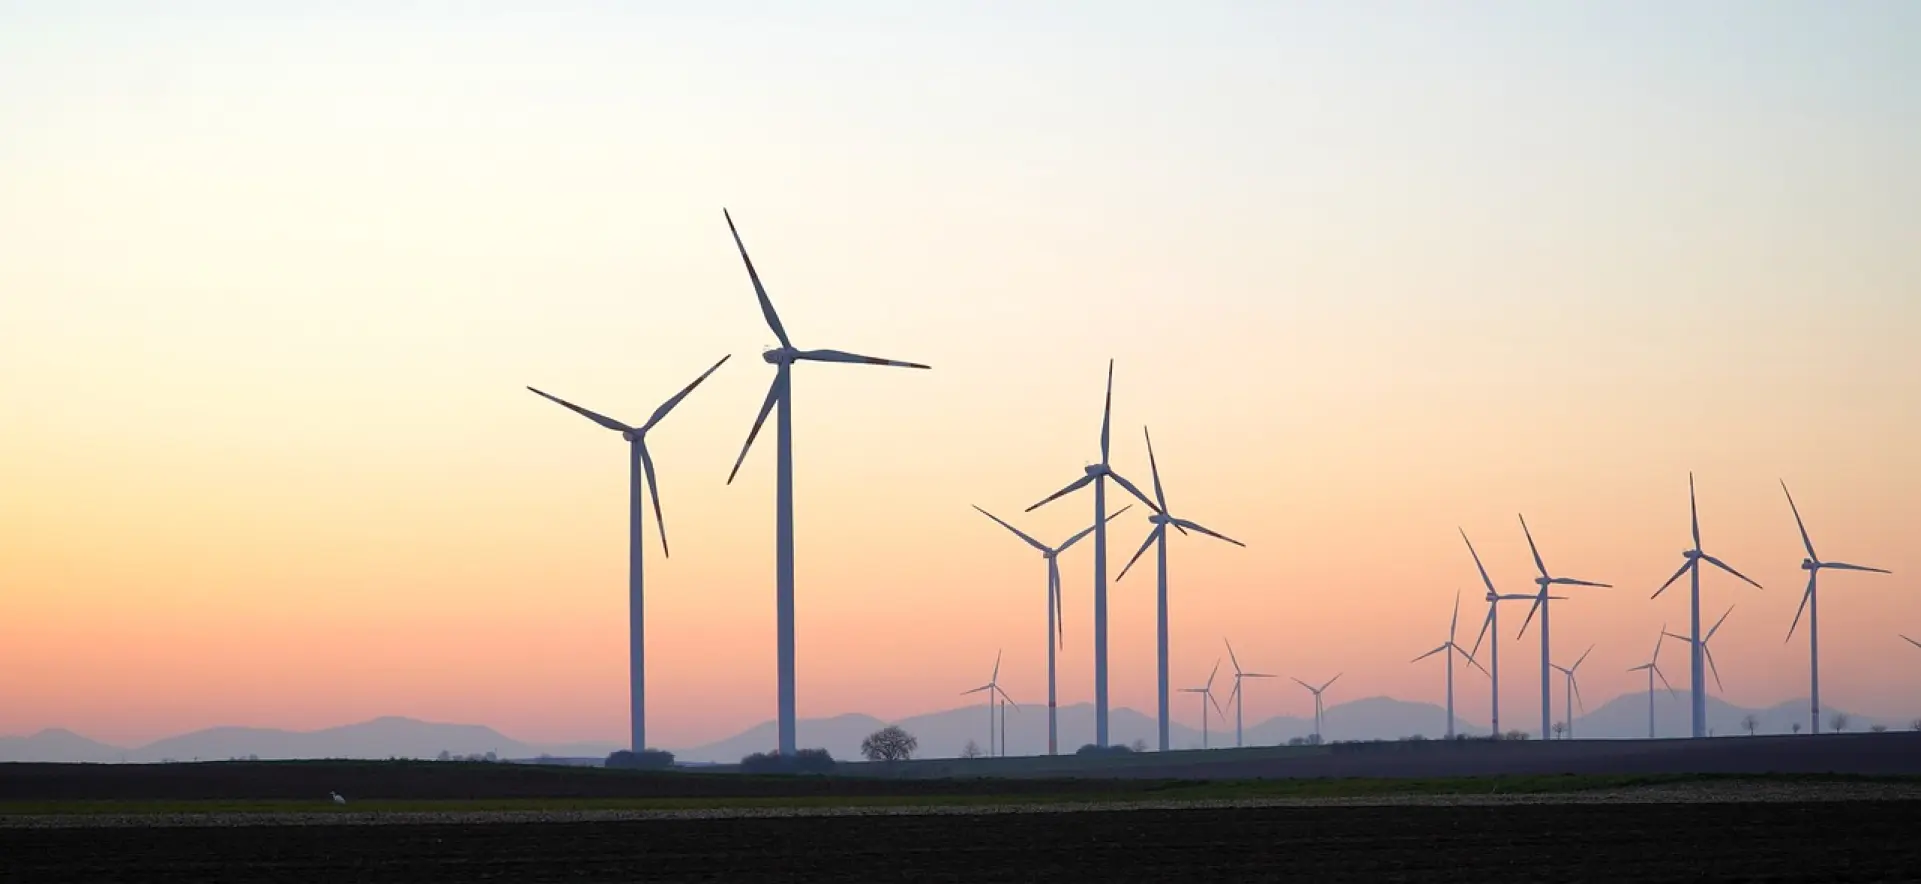 pinwheels, wind power, wind energy